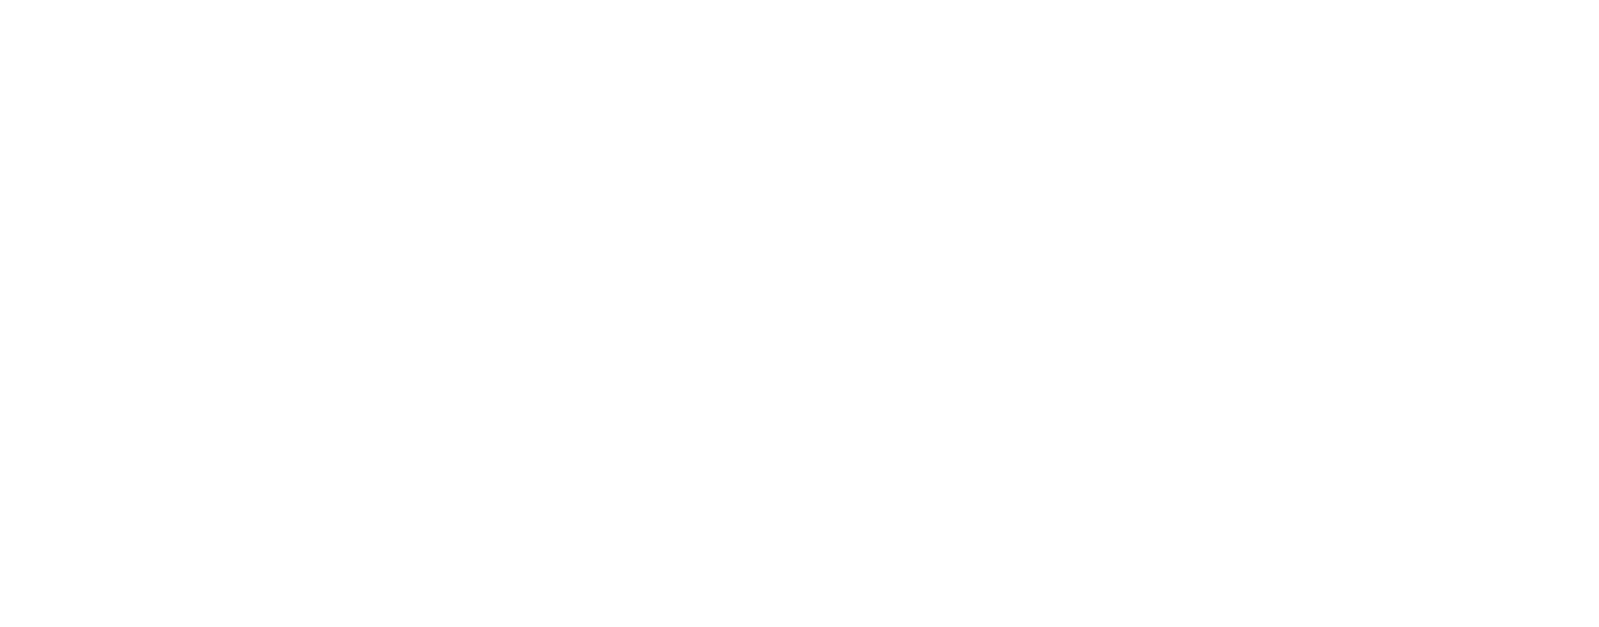 Warner Music Group - logo